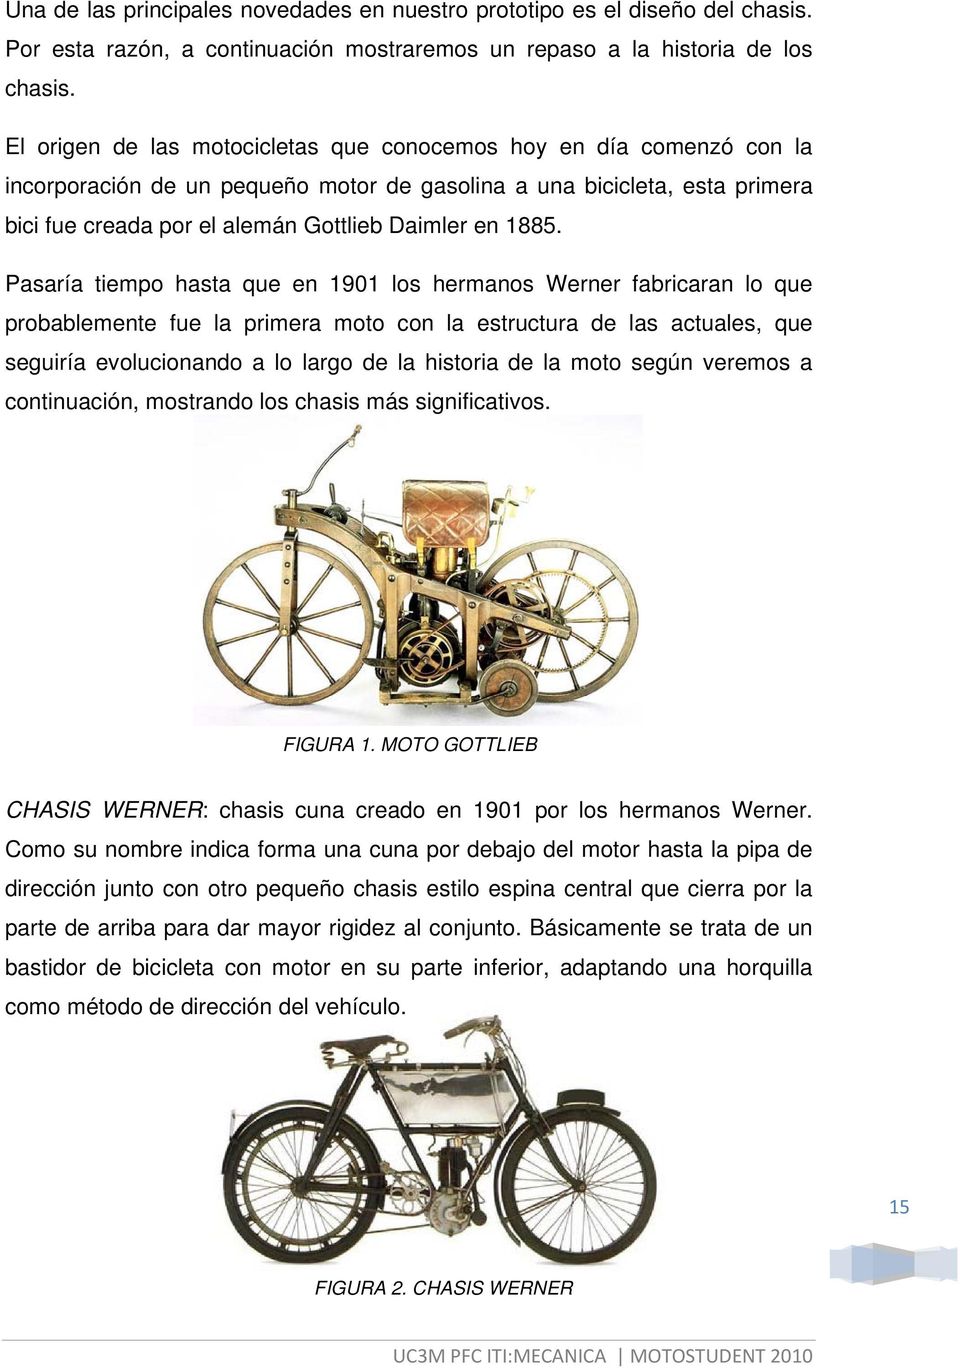 1885. Pasaría tiempo hasta que en 1901 los hermanos Werner fabricaran lo que probablemente fue la primera moto con la estructura de las actuales, que seguiría evolucionando a lo largo de la historia